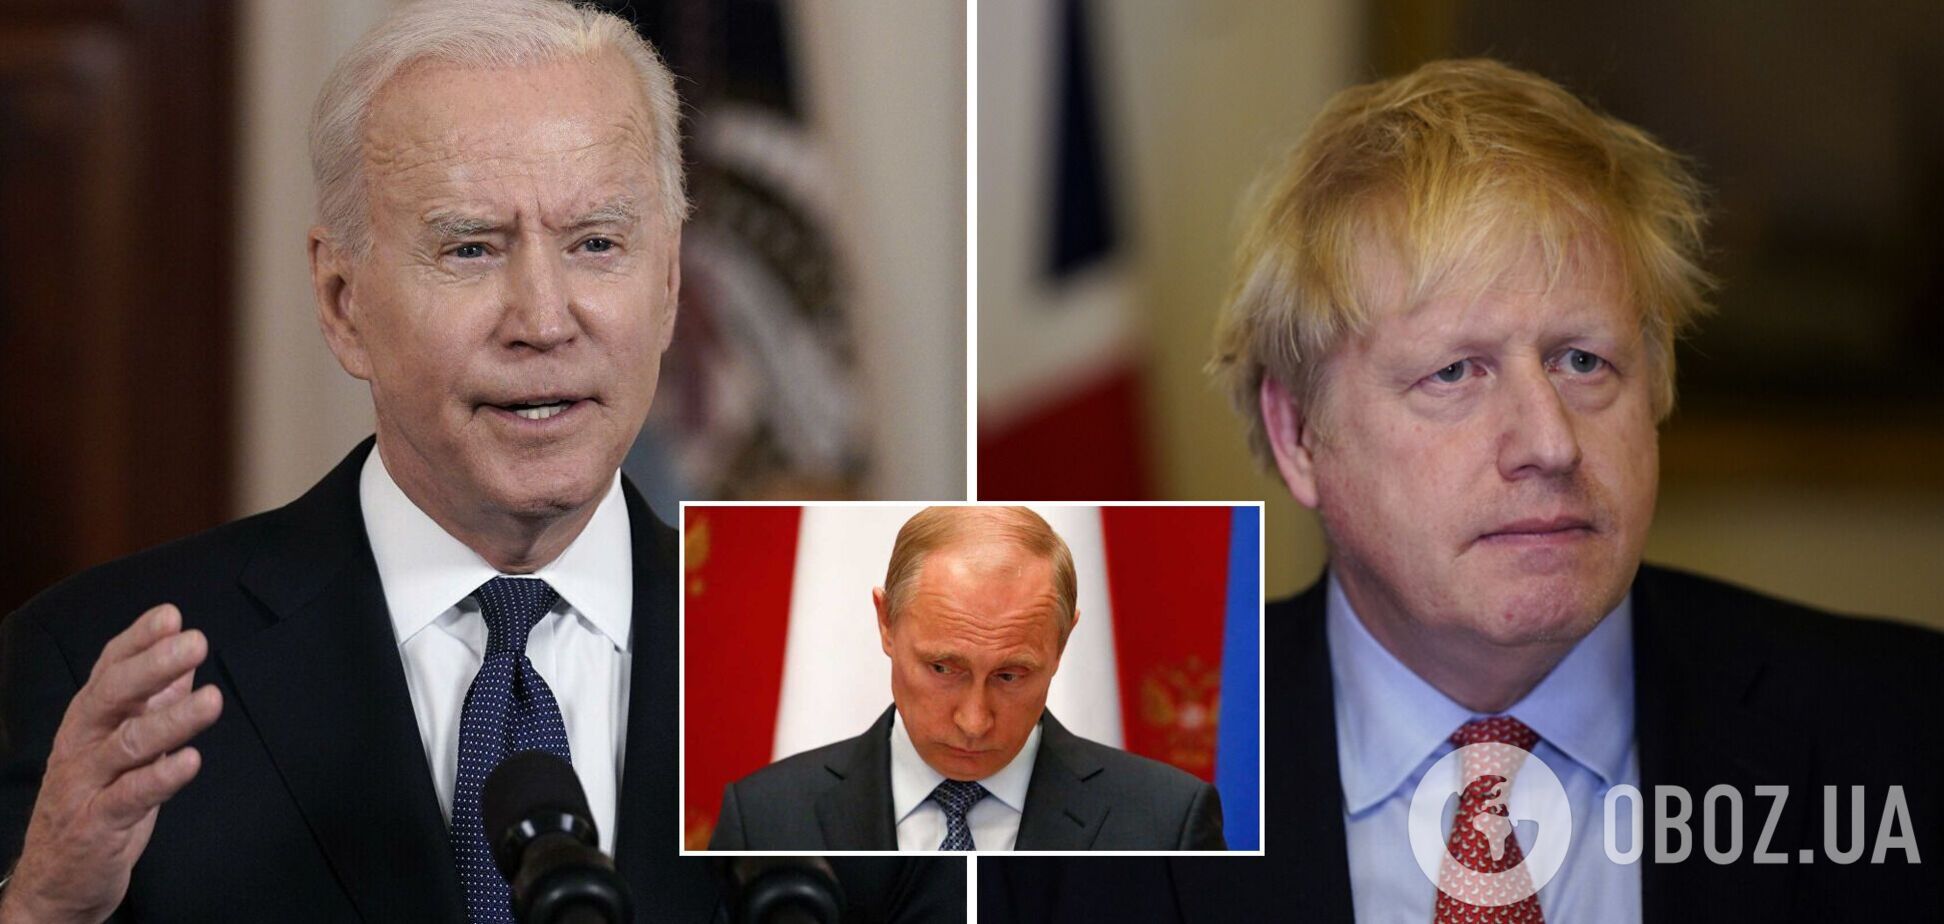 Байден и Джонсон 16 февраля одержат победу над Путиным